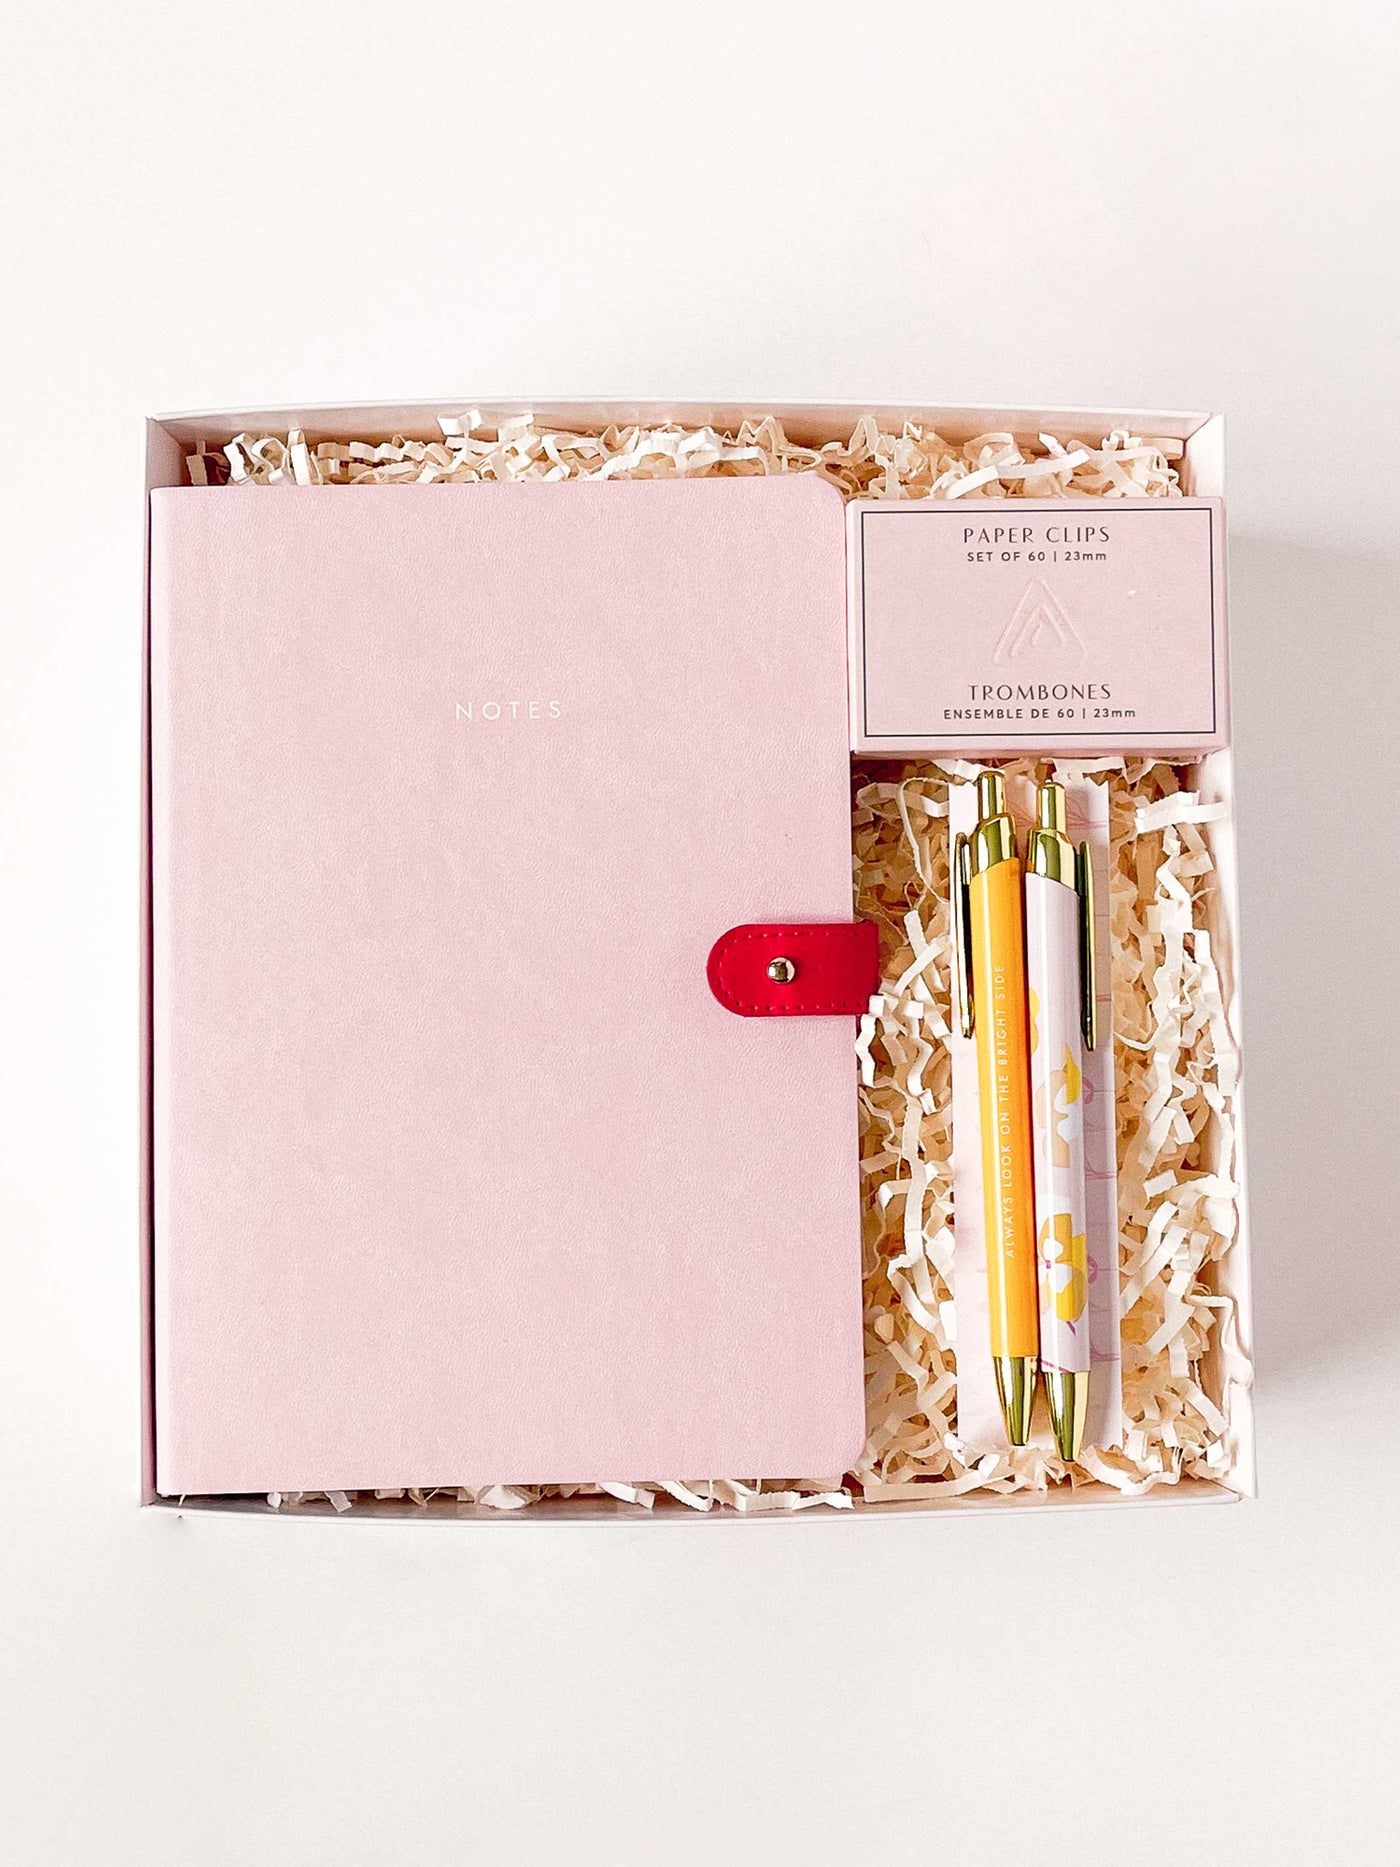 Work Essentials Gift Box - Blush